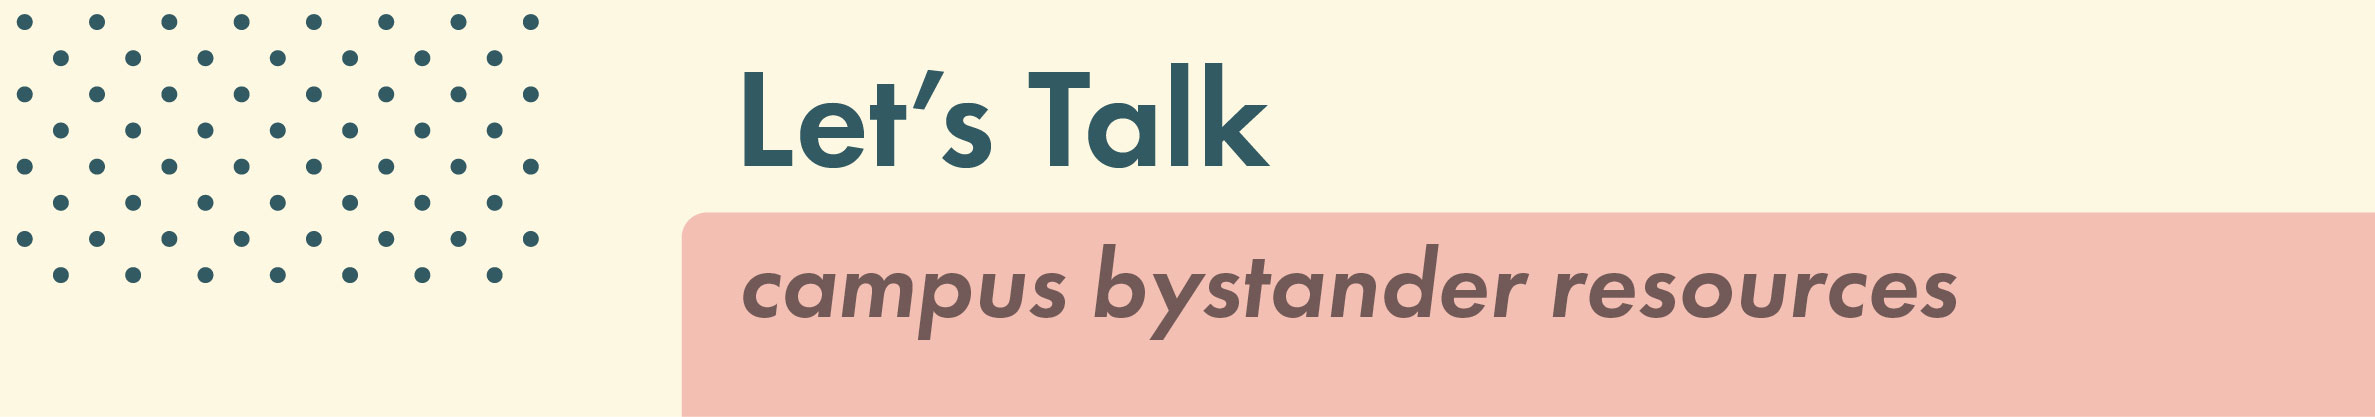 Let's Talk: Campus Bystander Resources